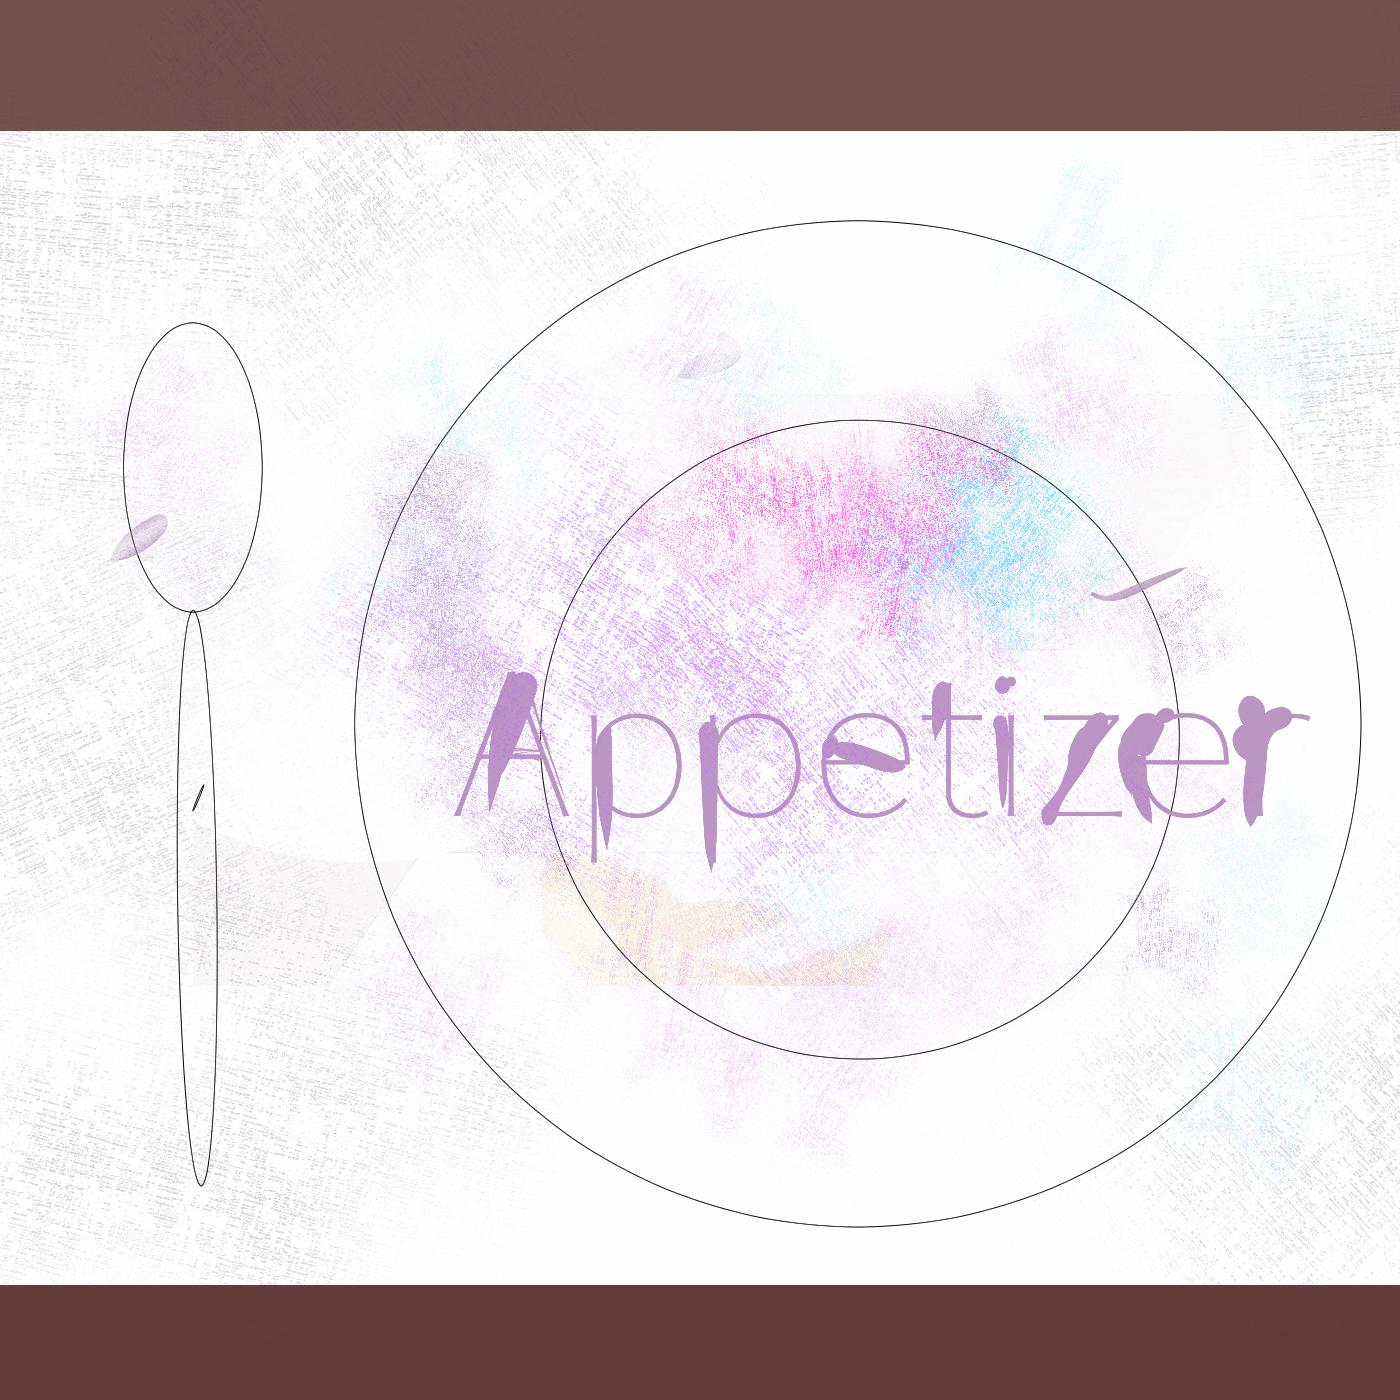 天文学歌词 歌手かしこ。 / 初音ミク-专辑Appetizer-单曲《天文学》LRC歌词下载